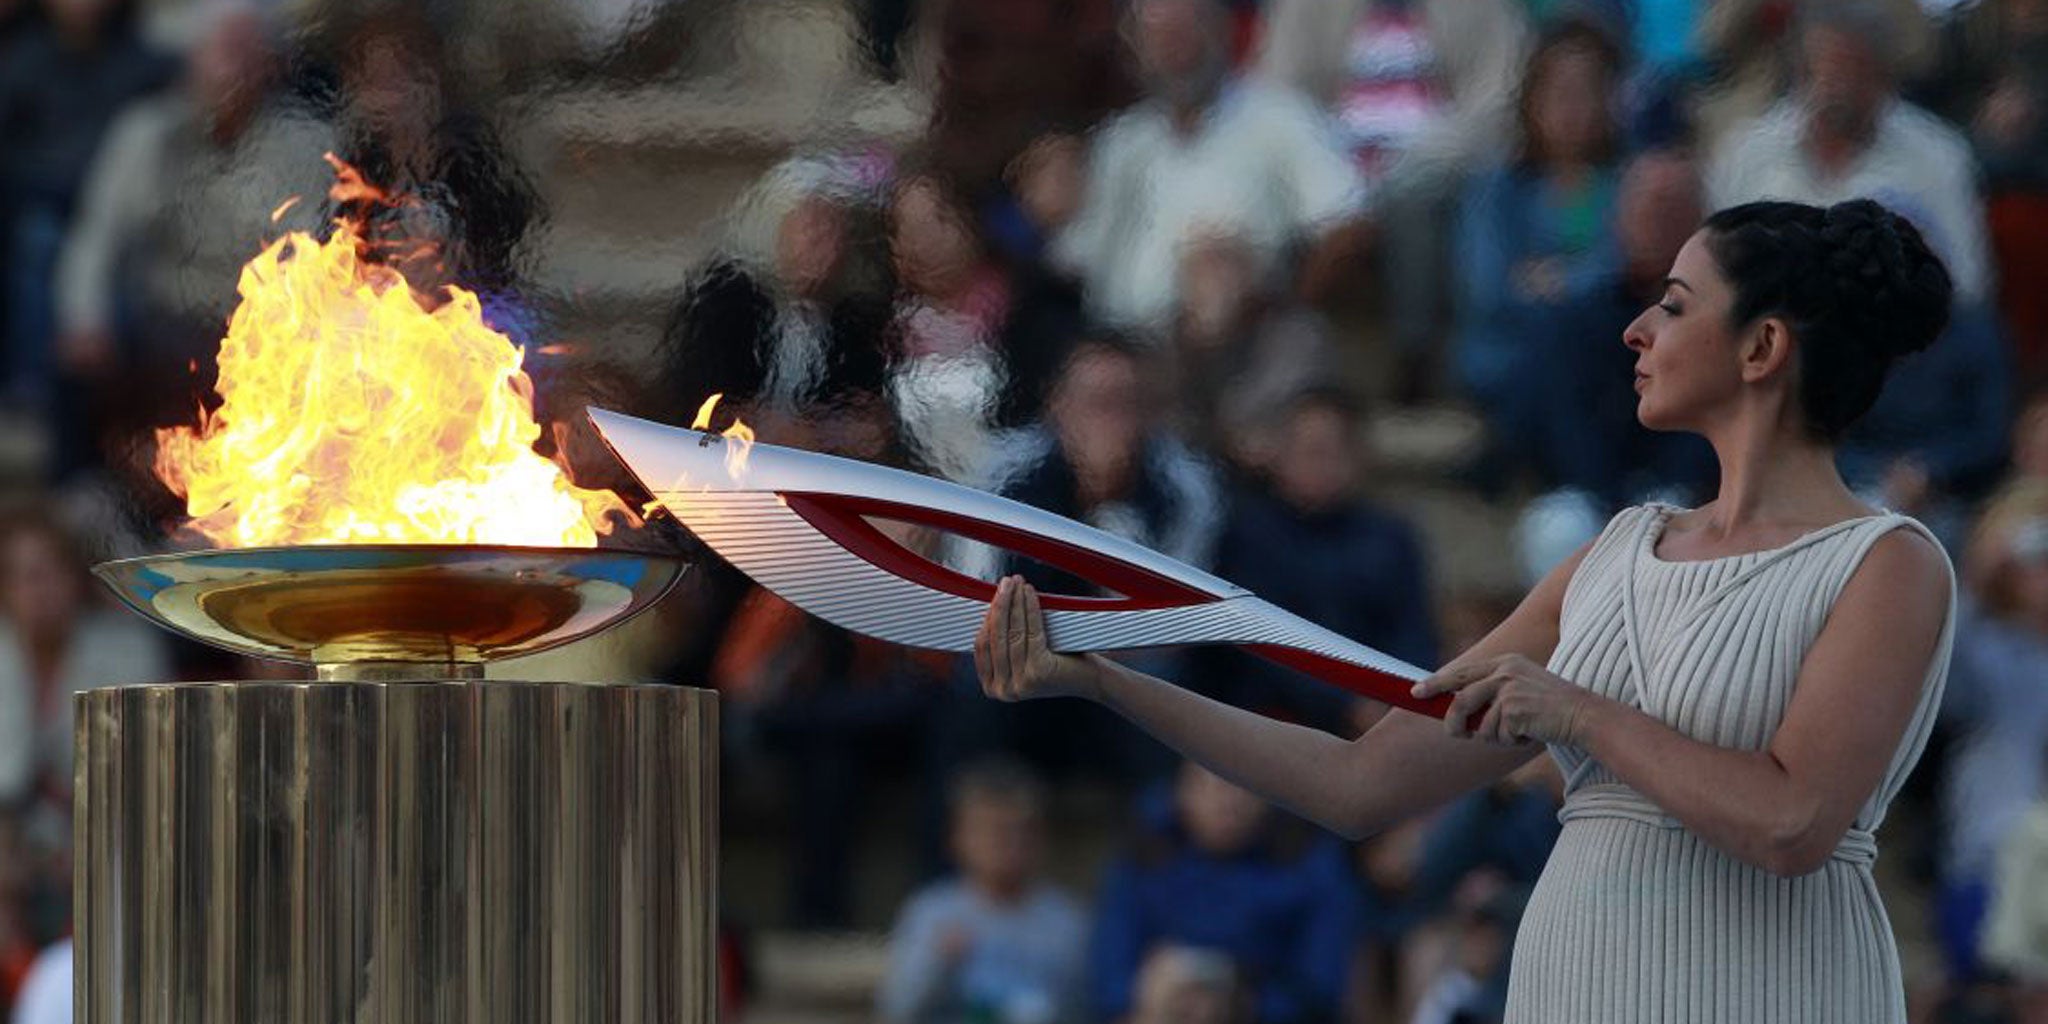 Олимпийский огонь современных игр зажигается. Зажжение олимпийского огня в Сочи. Олимпийский огонь Сочи 2014. Ишмуратова Олимпийский огонь.